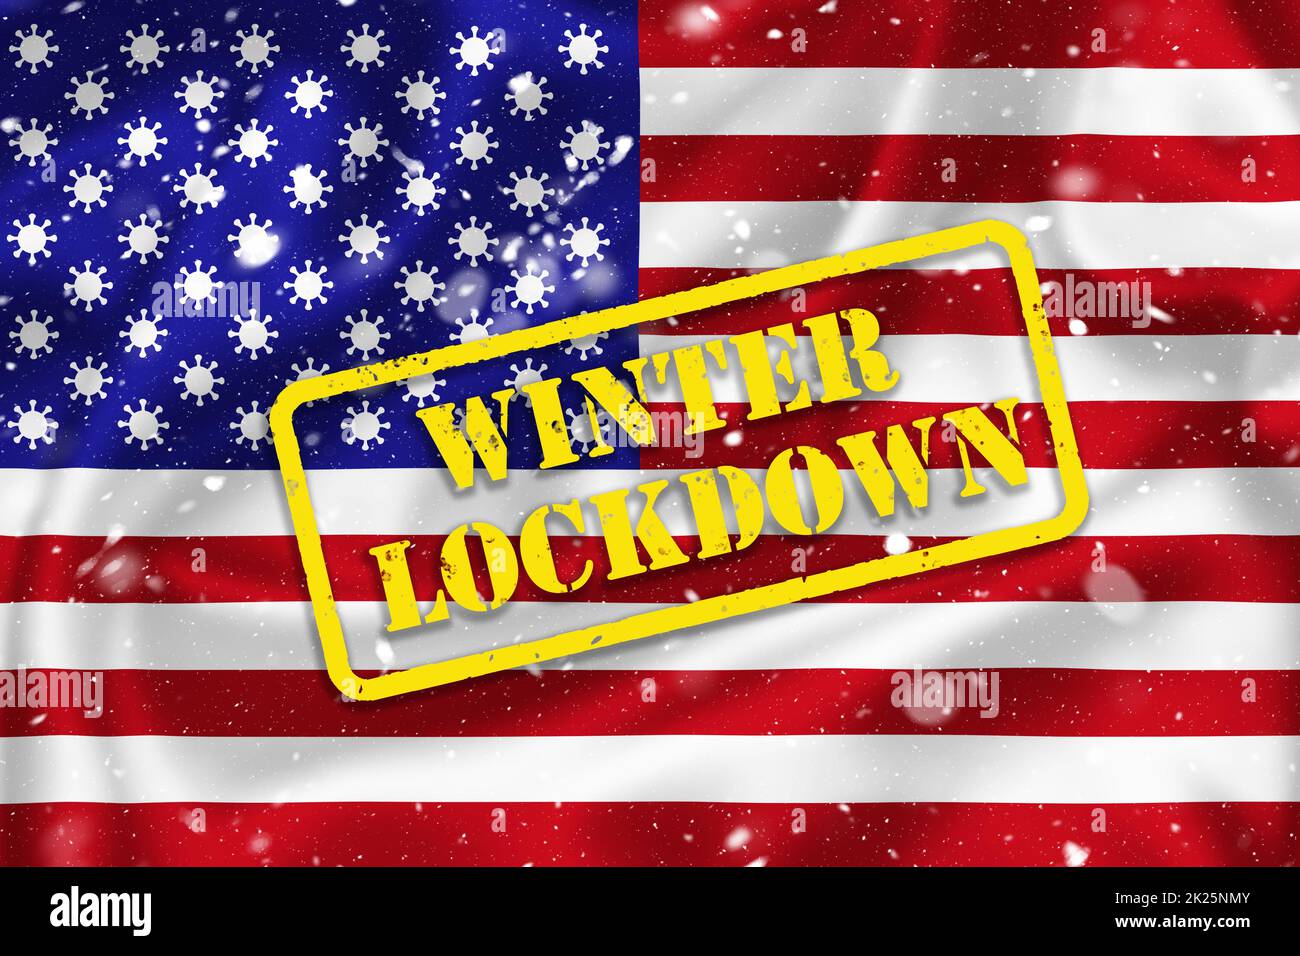 US-Flagge Illustration mit Coronavirus Zeichen anstelle von Sternen und Winter Lockdown Text Stockfoto